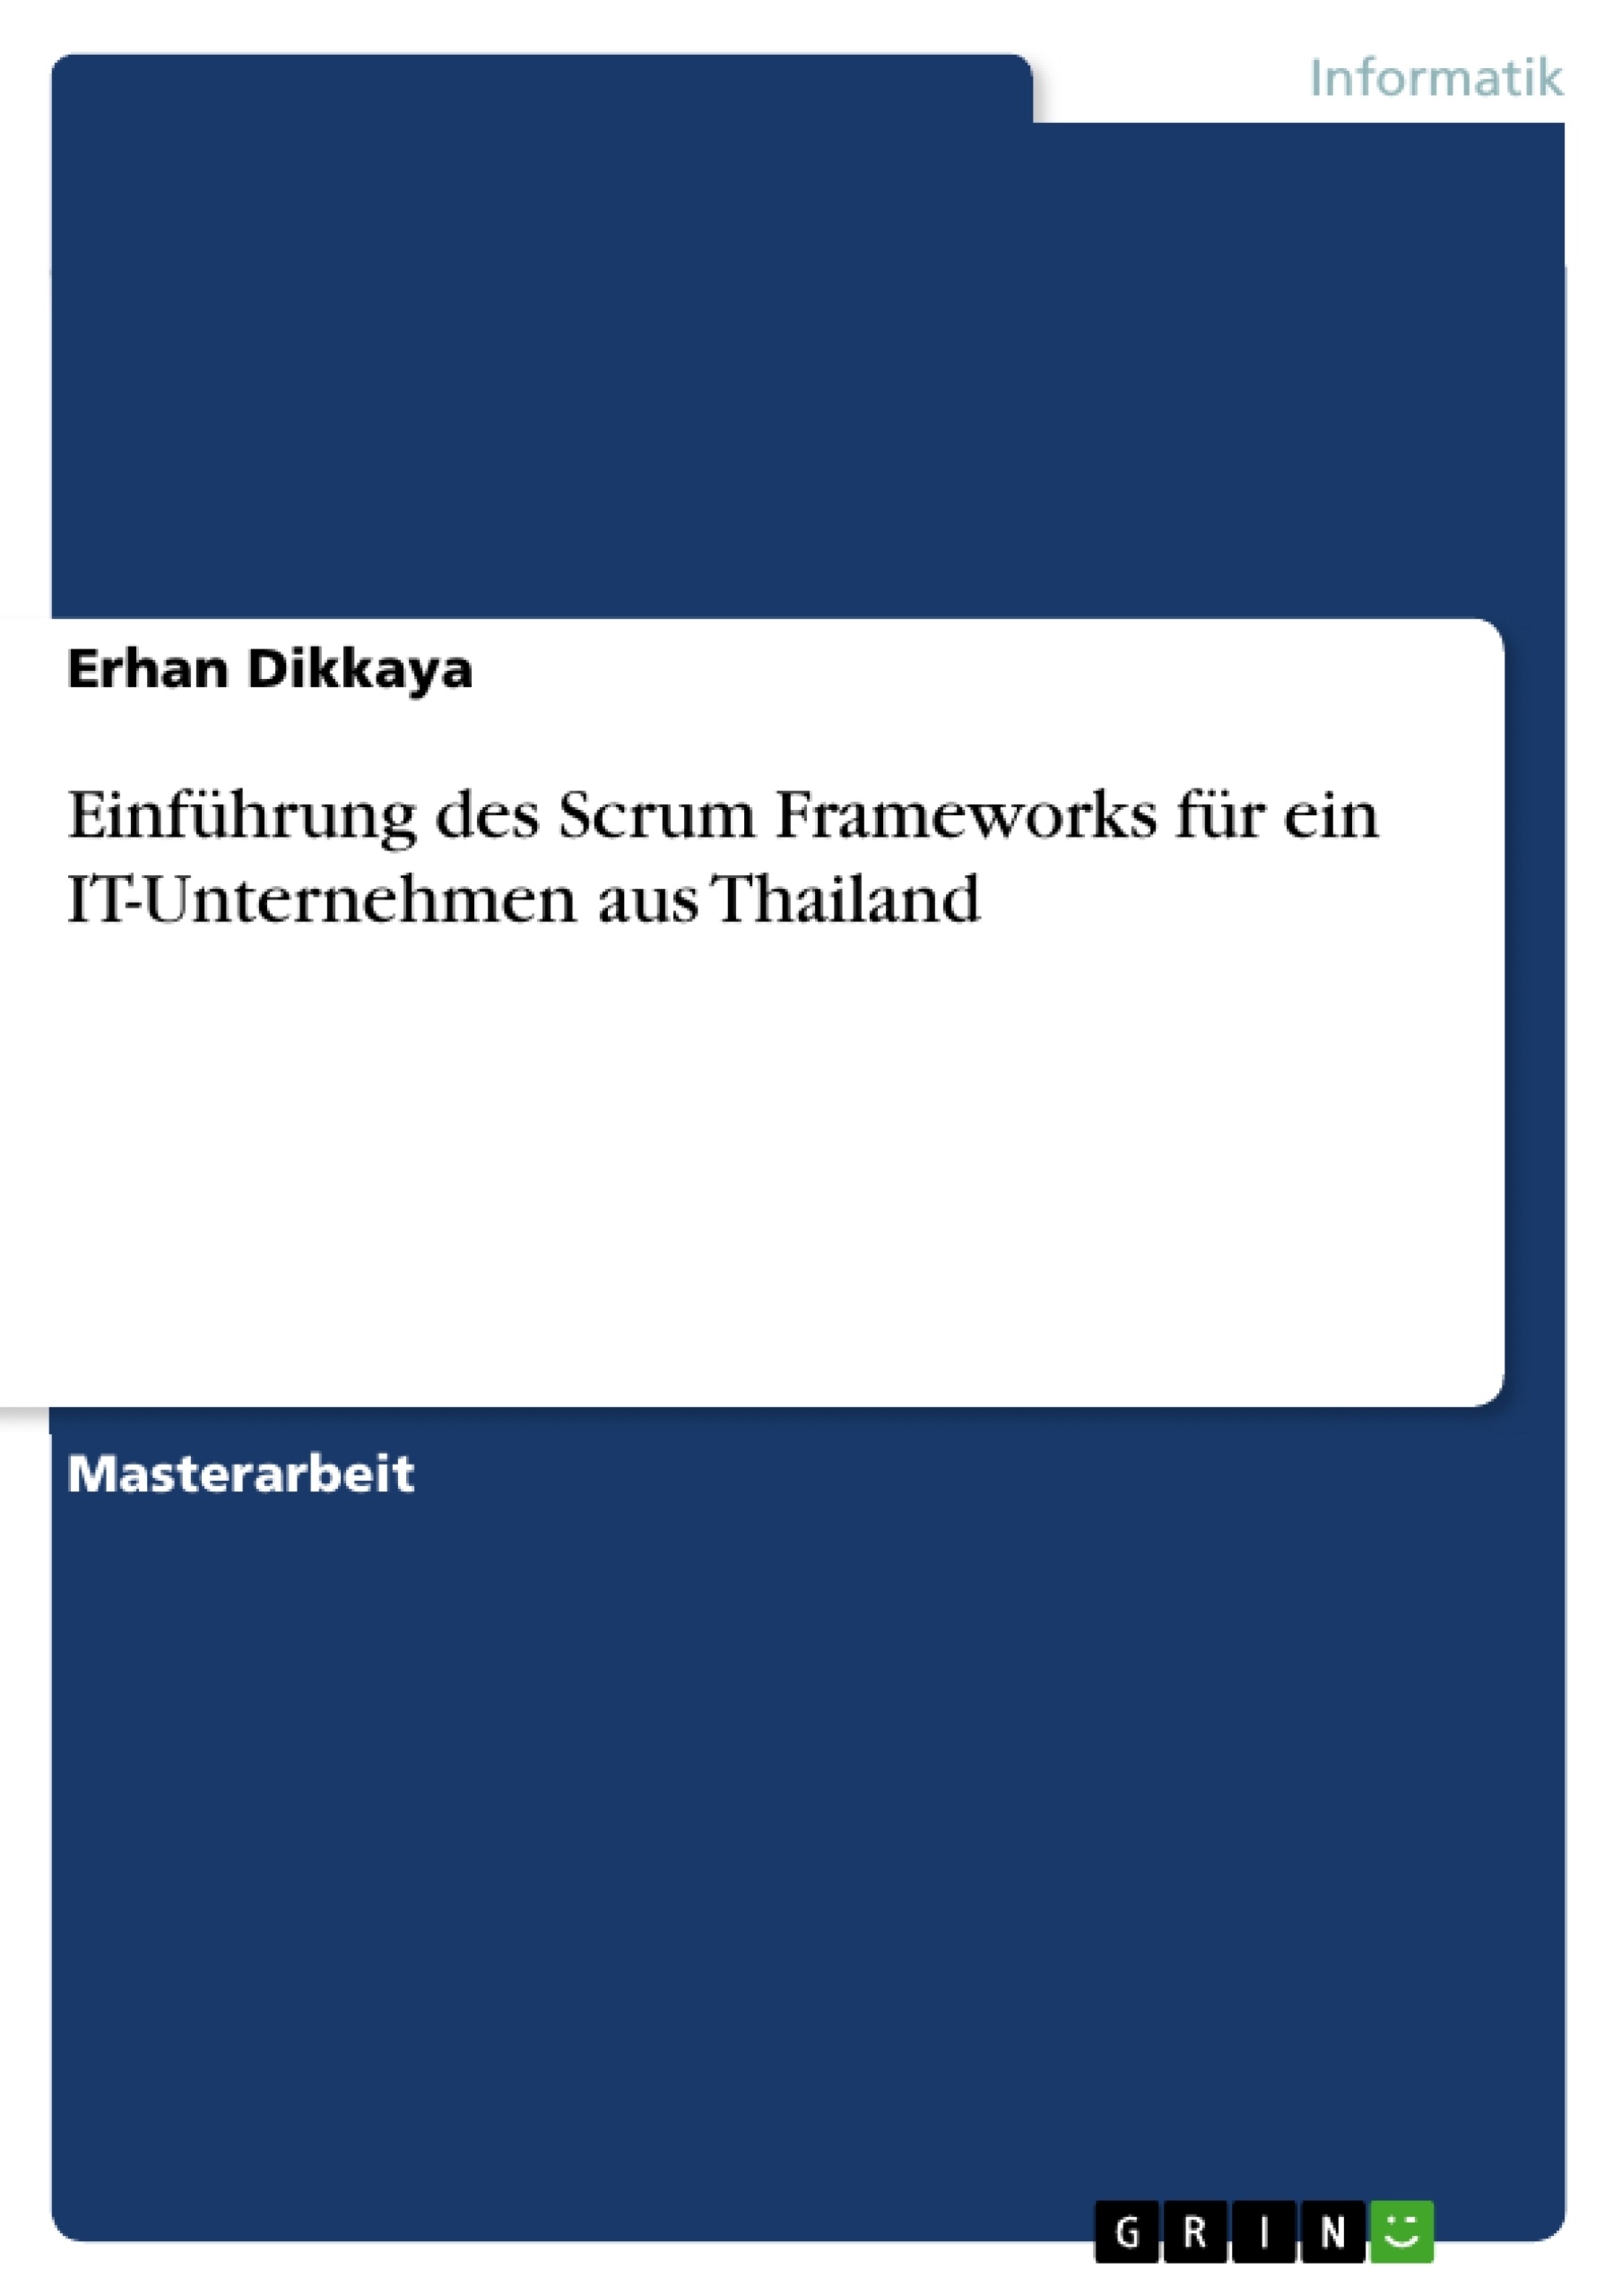 Title: Einführung des Scrum Frameworks für ein IT-Unternehmen aus Thailand